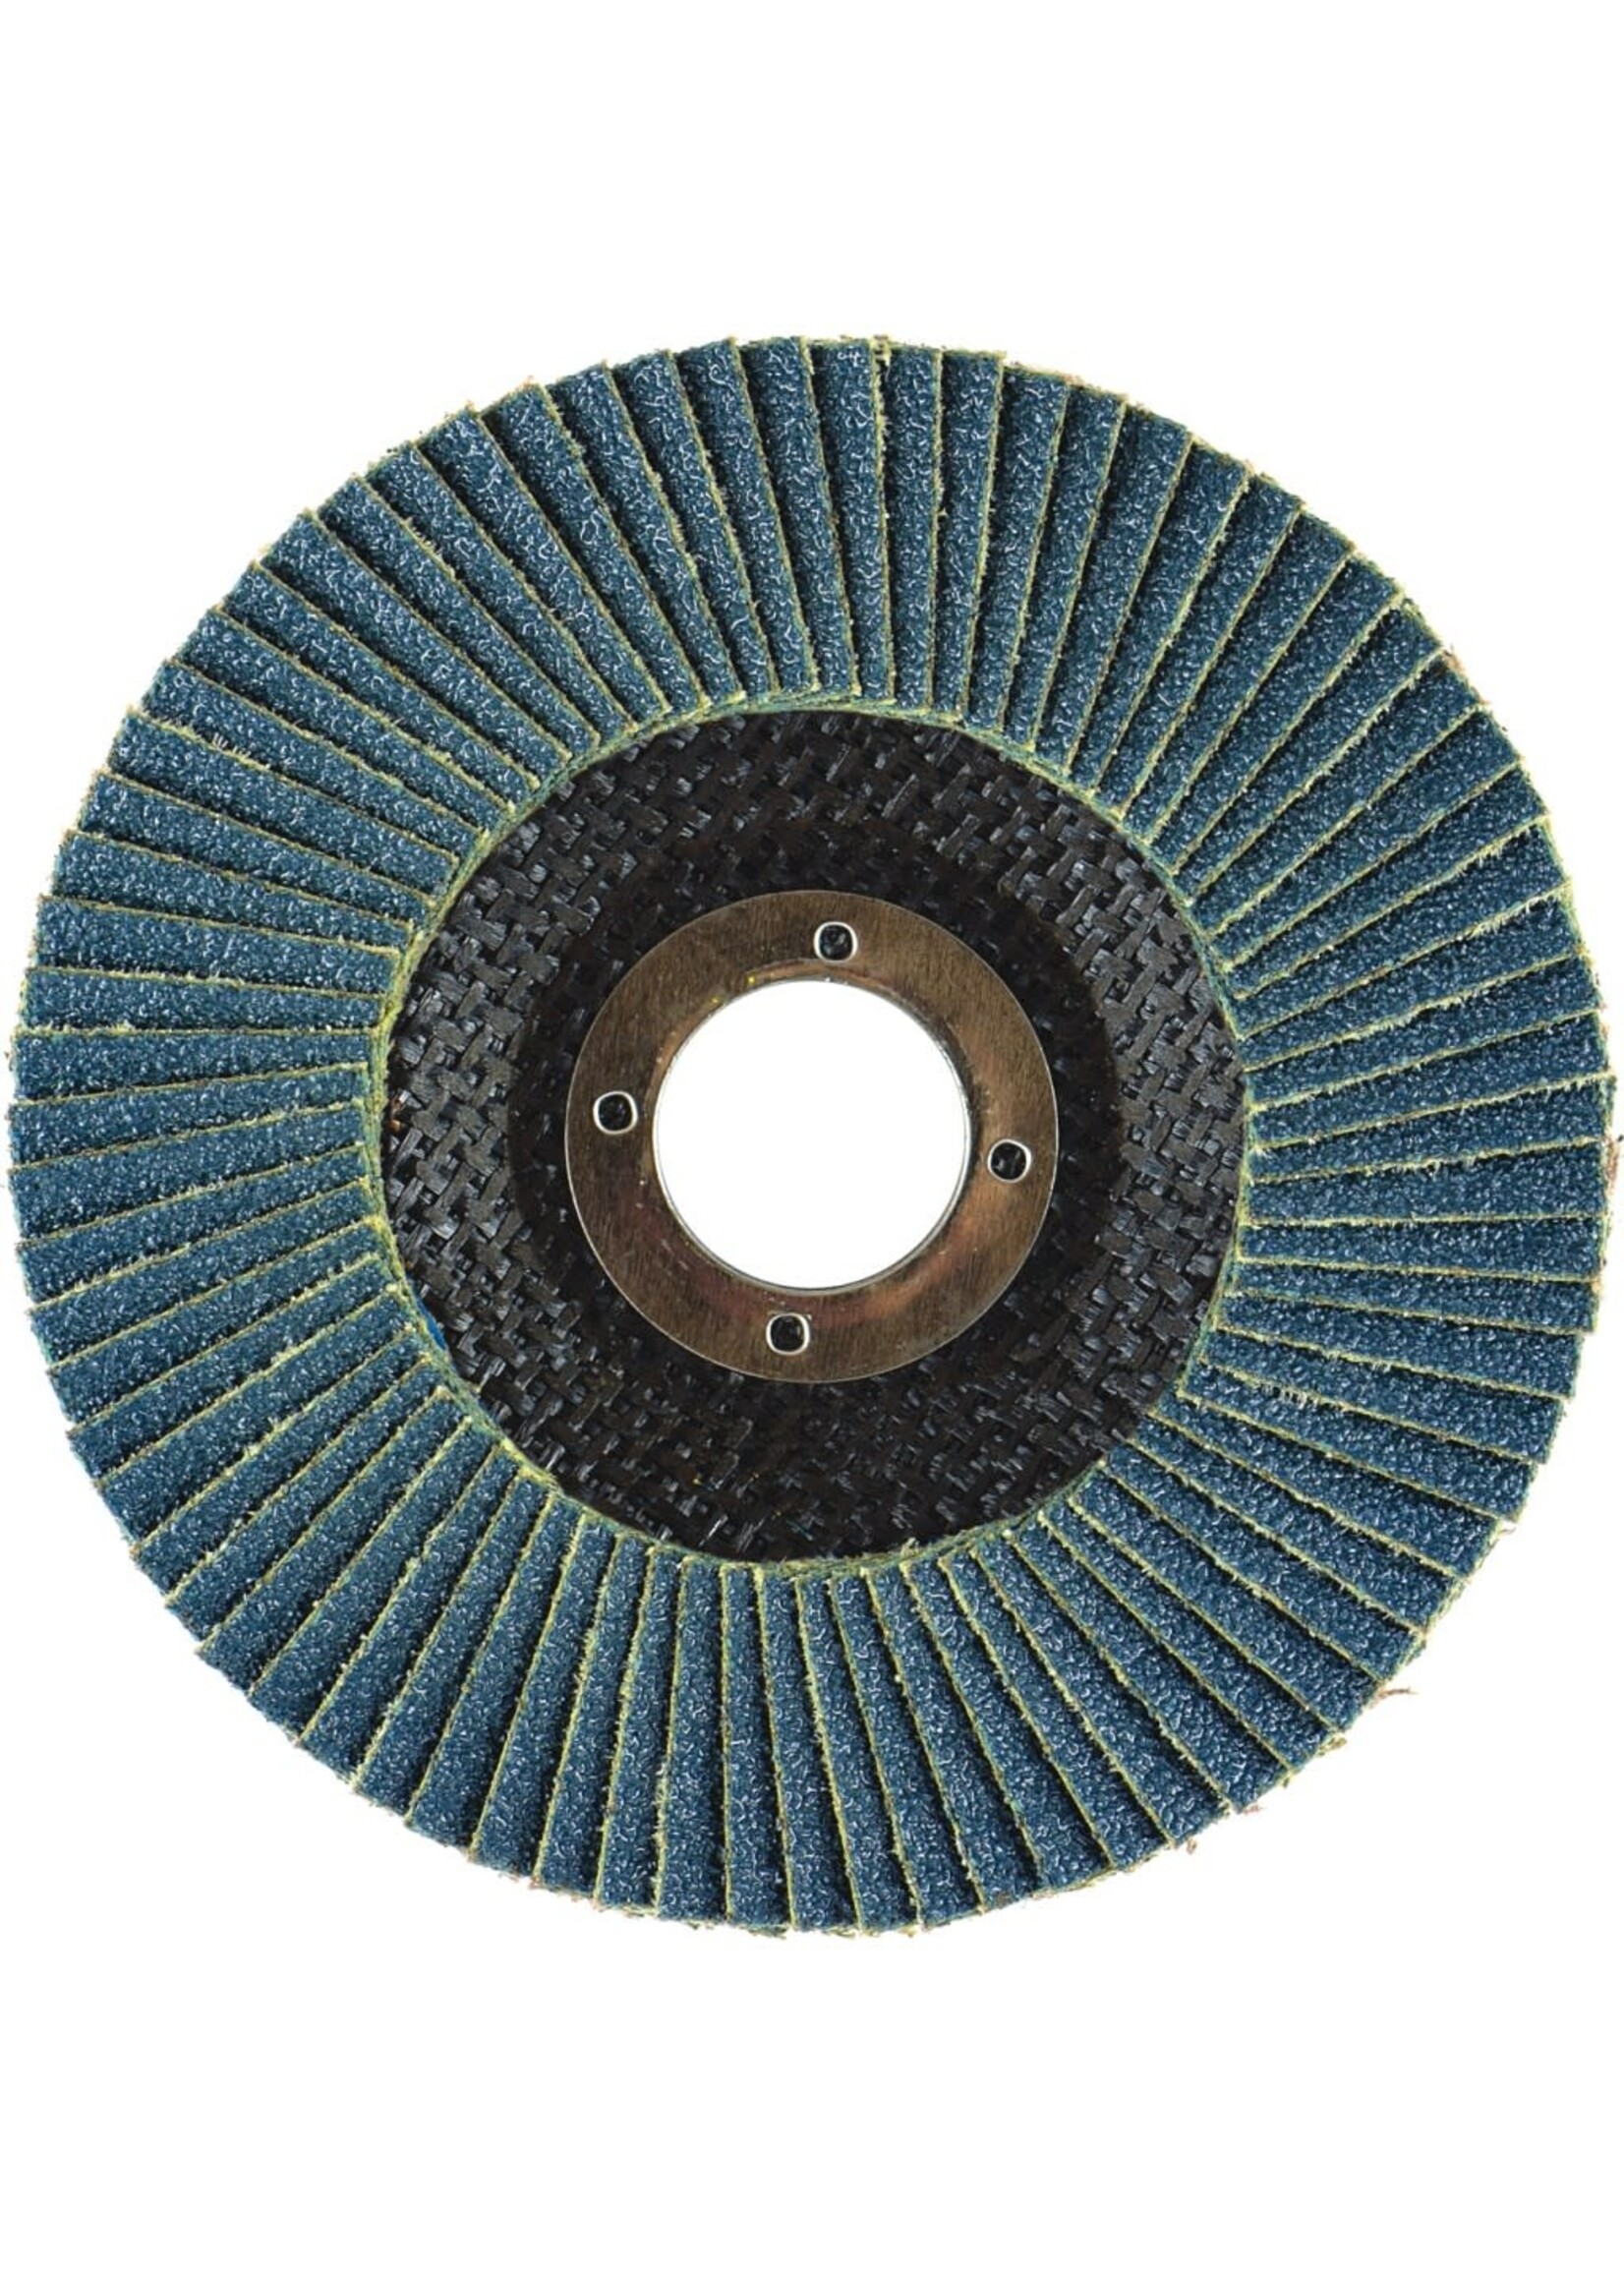 Arc Abrasive 4.5" 60 Grit High Density Flap Disk